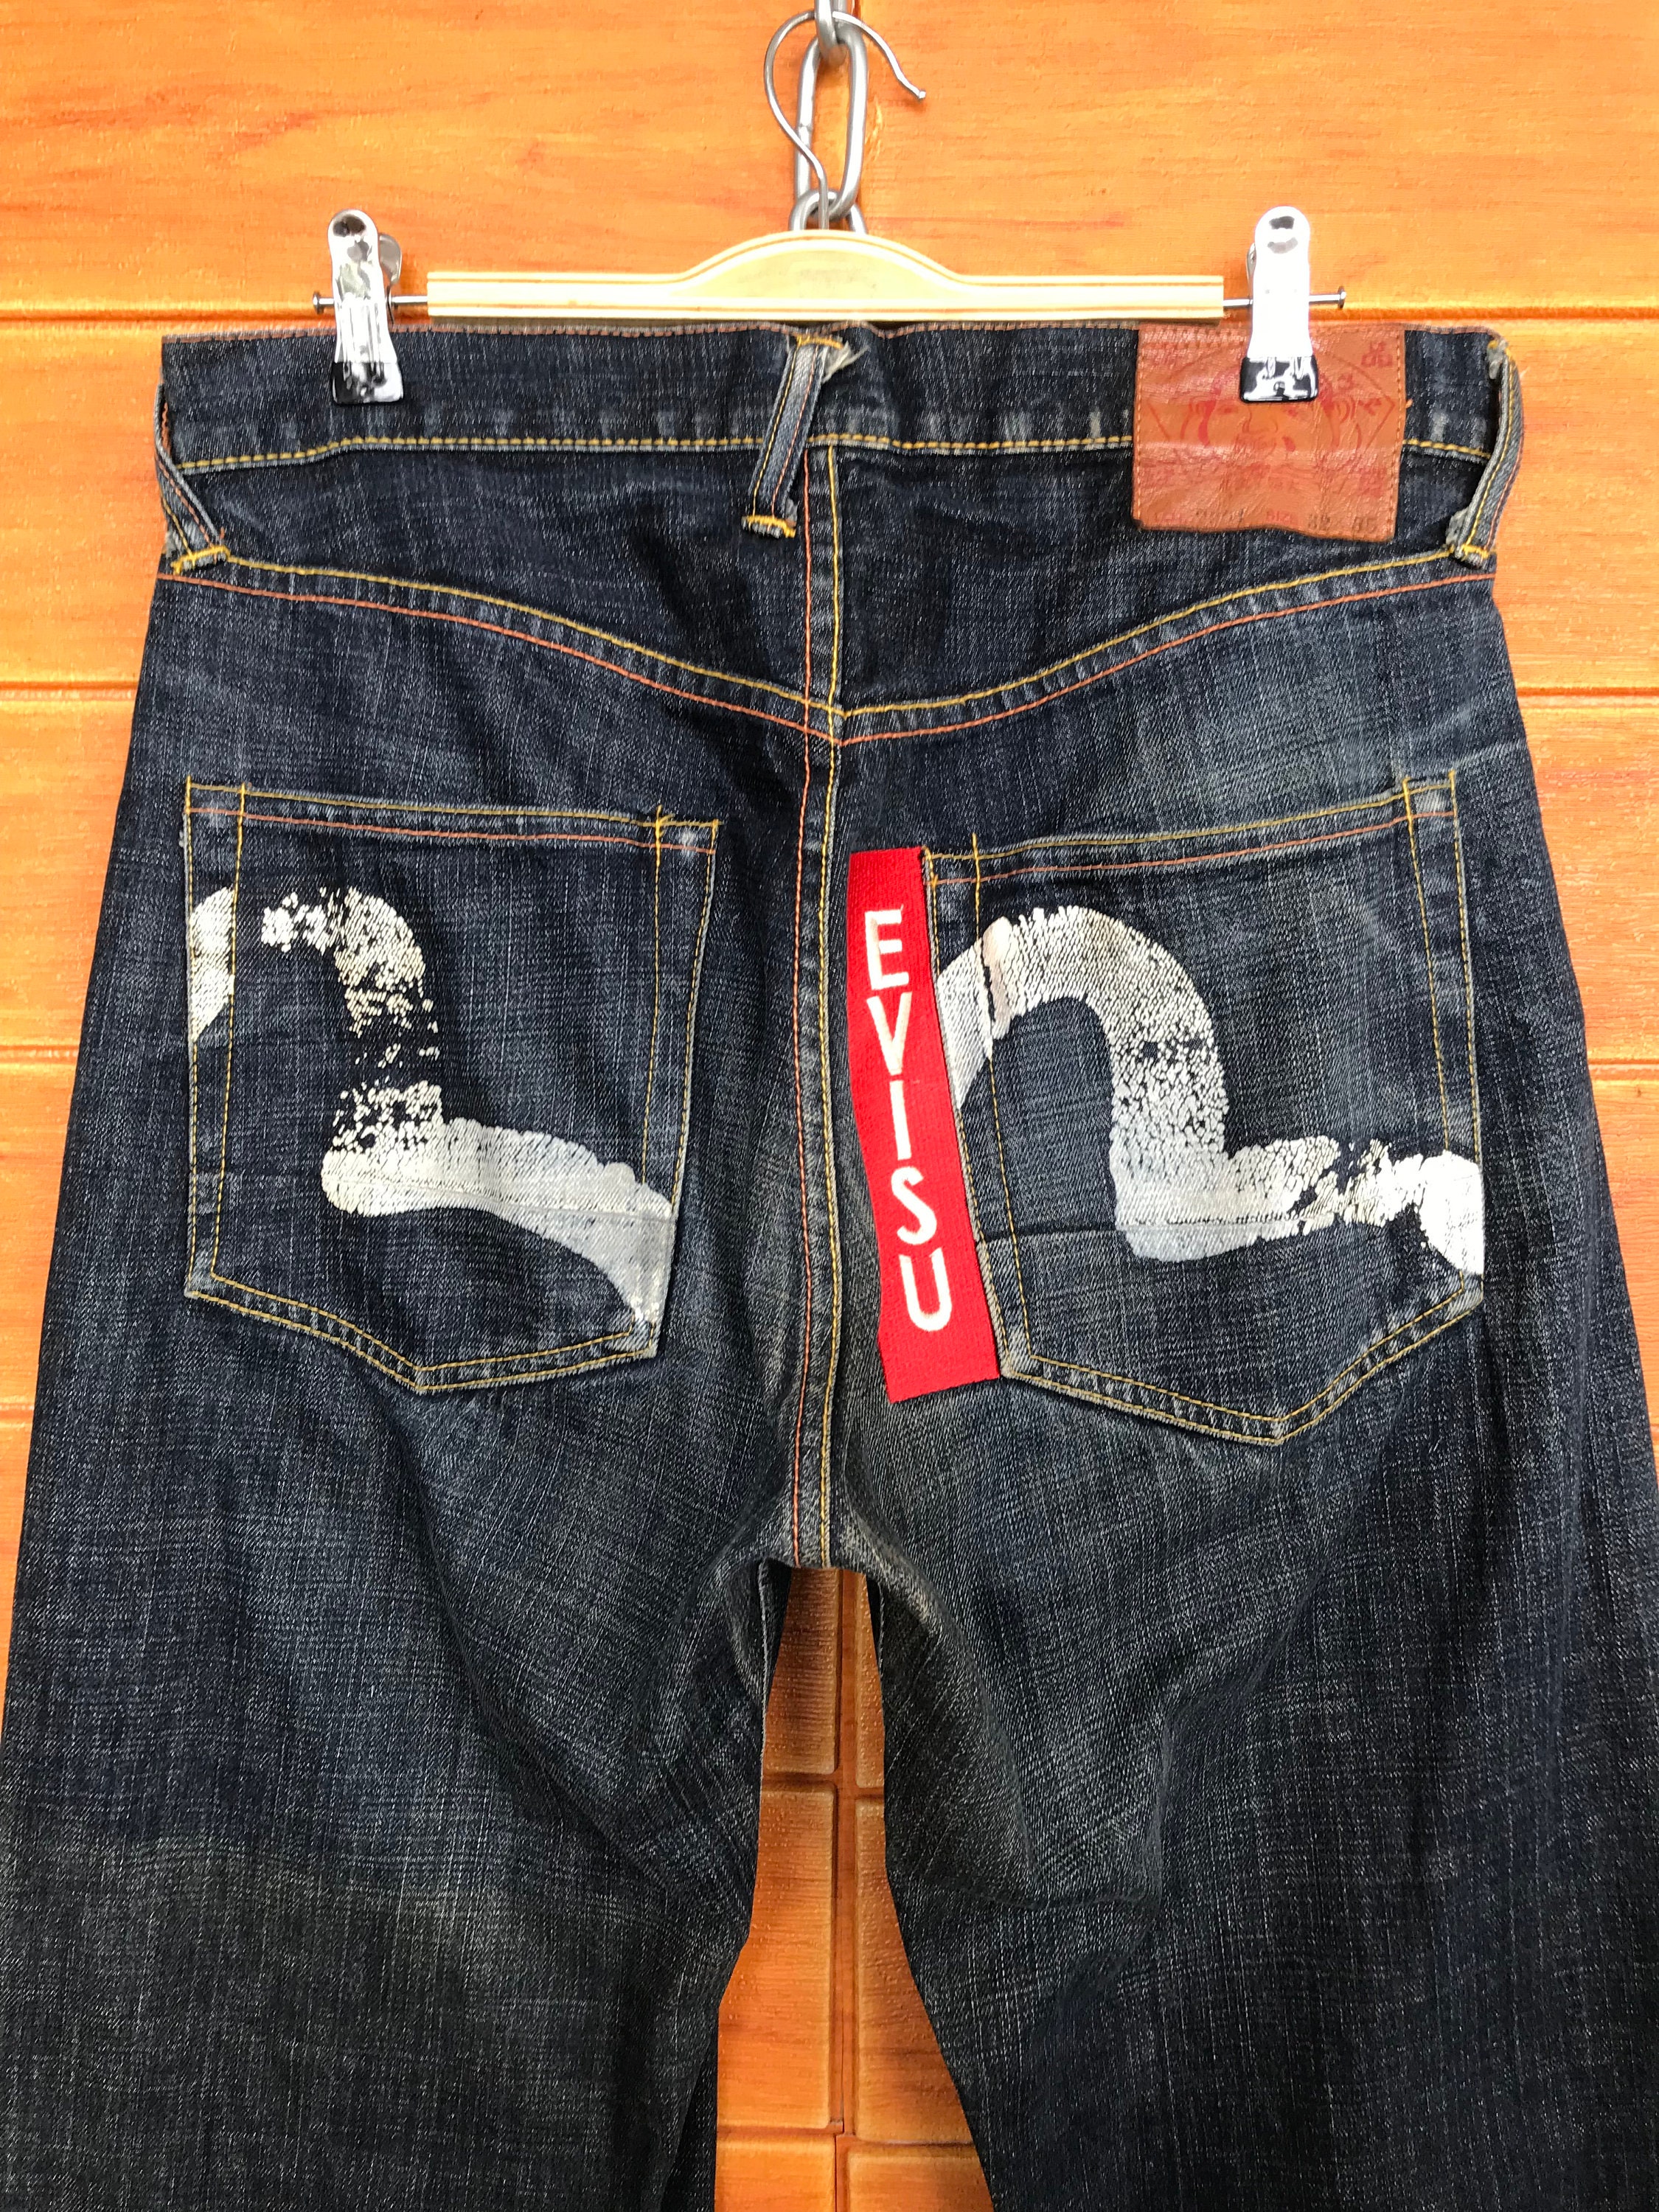 Vintage Og Evisu Embroidered Back Pocket Denim Jeans / Yamane - Etsy